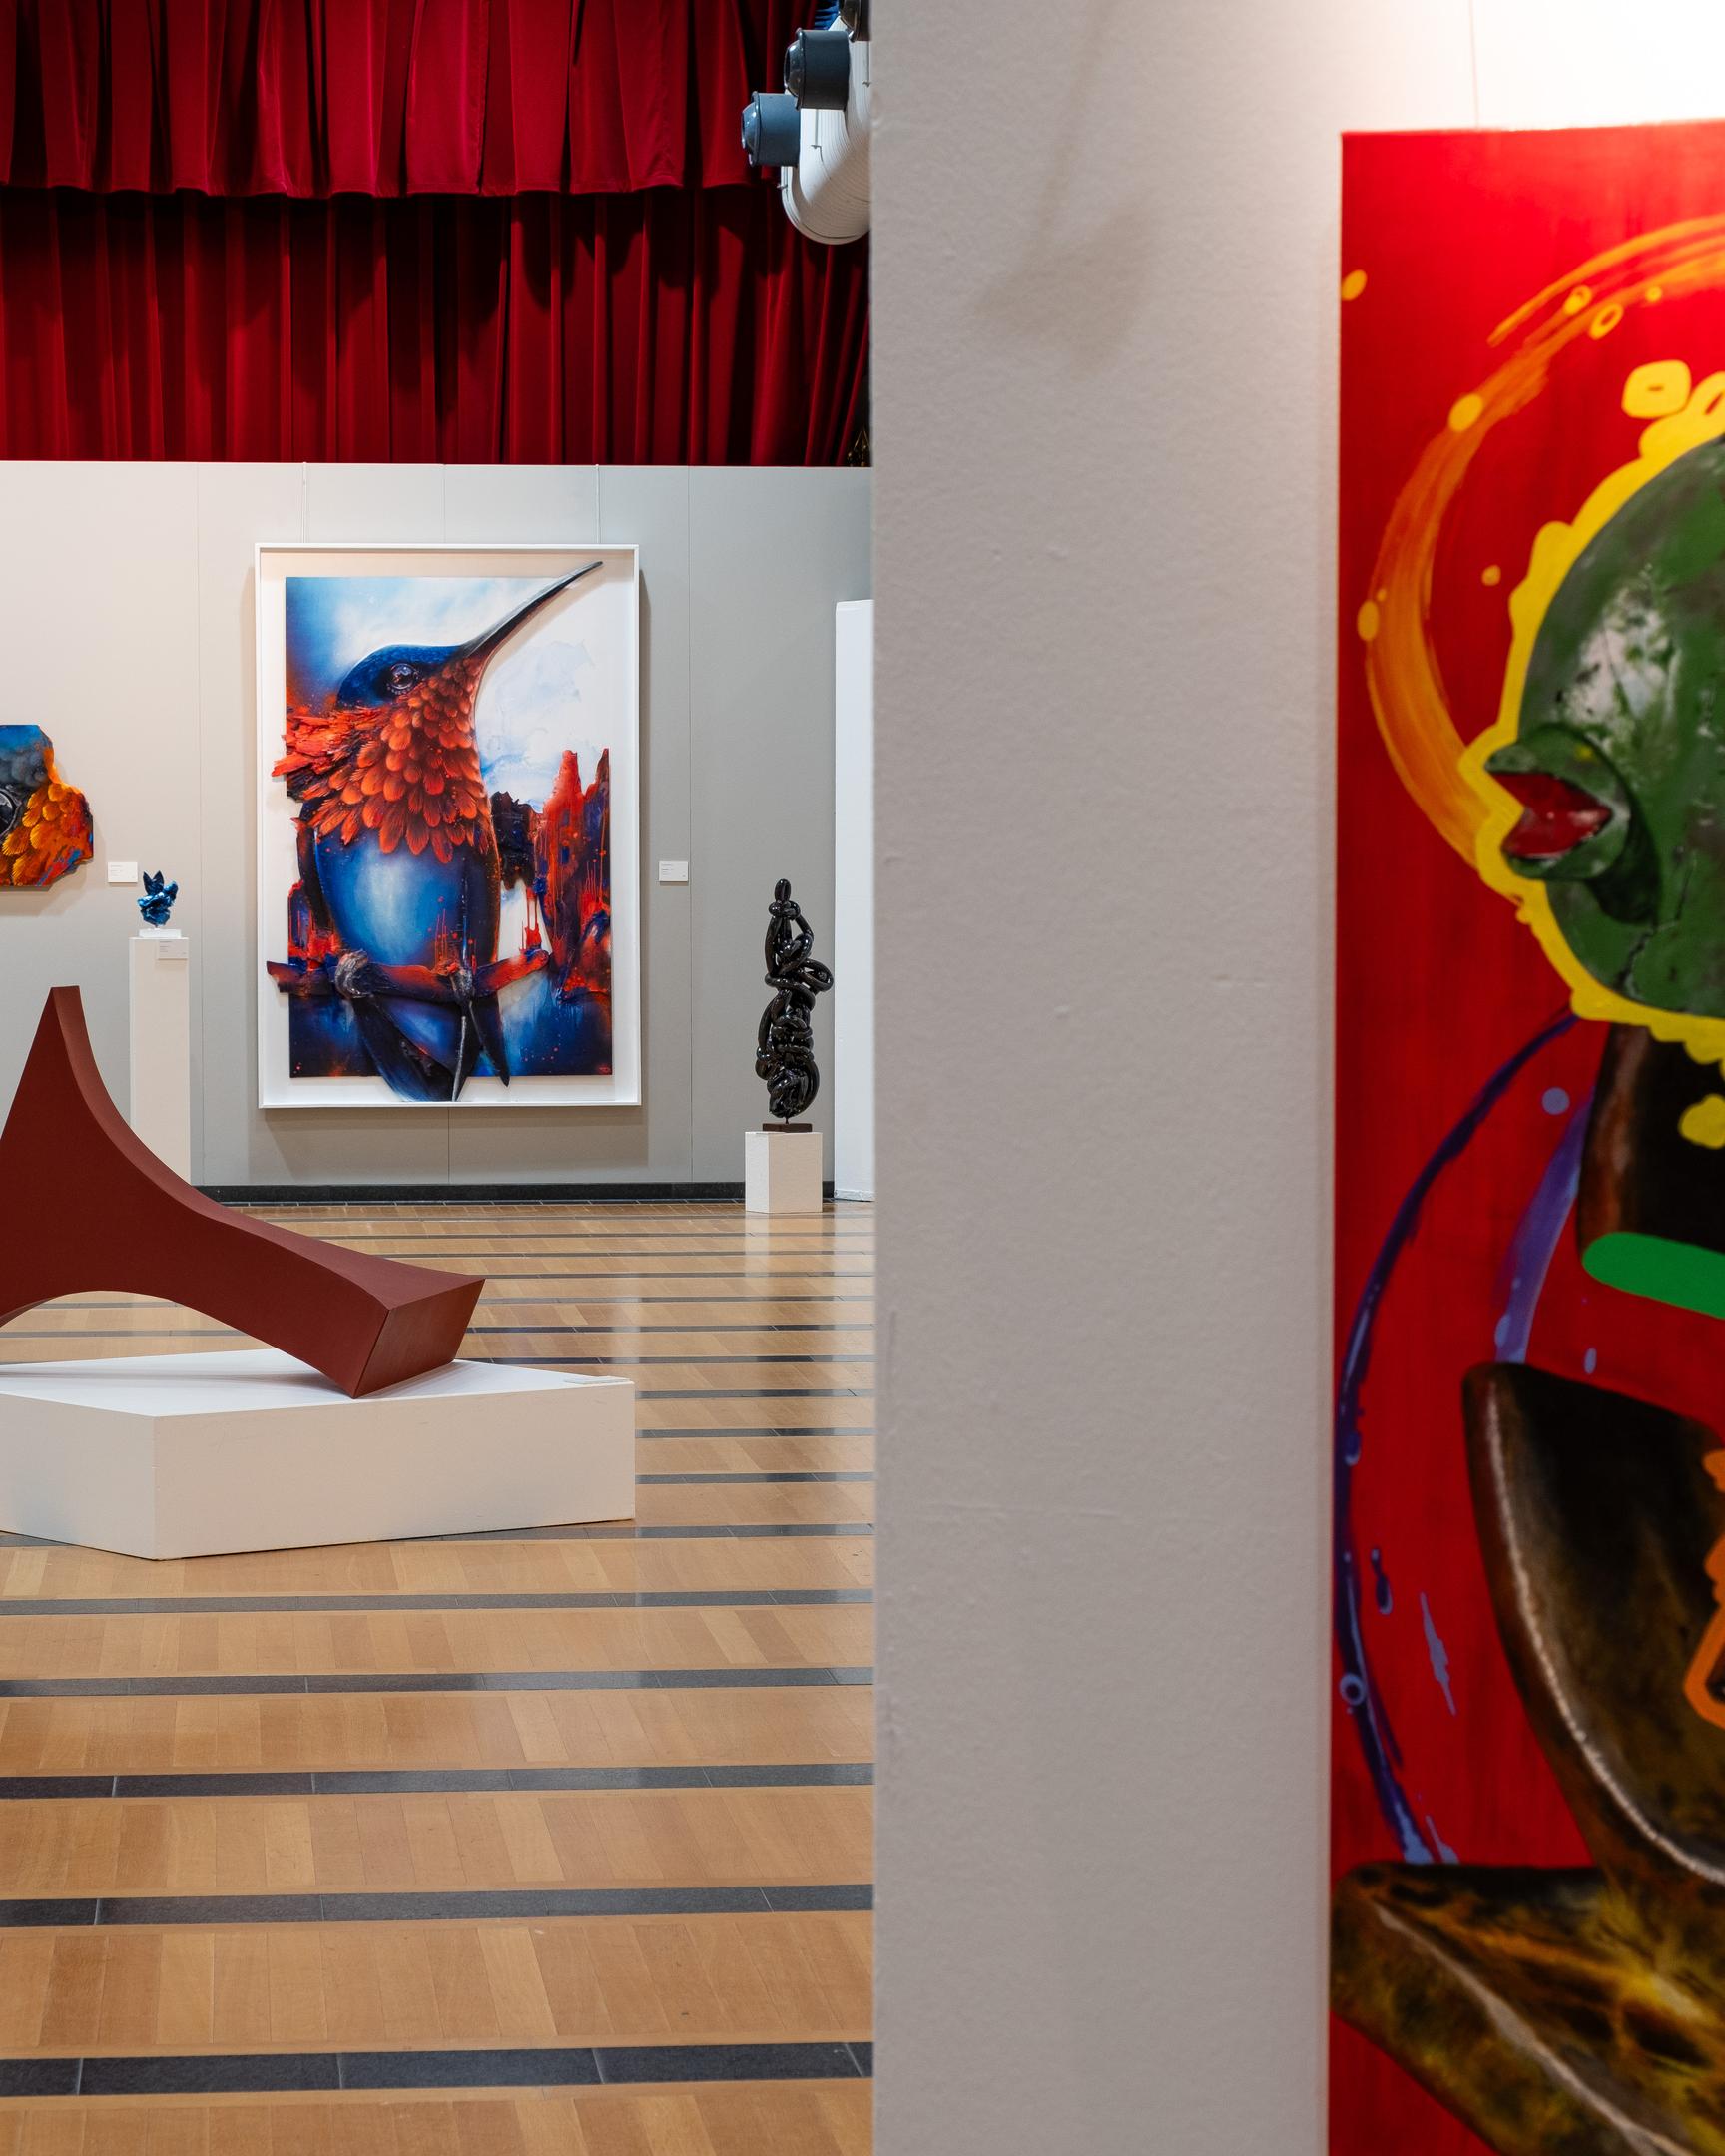 90 Kunstwerke von 30 Künstlern und Künstlerinnen sind in Strassen ausgestellt. Die Biennale zeigt eine vielfältige Palette an künstlerischen Techniken, darunter Gemälde, Skulpturen, Fotografien, Textilien, Keramiken, Collagen und Assemblagen.